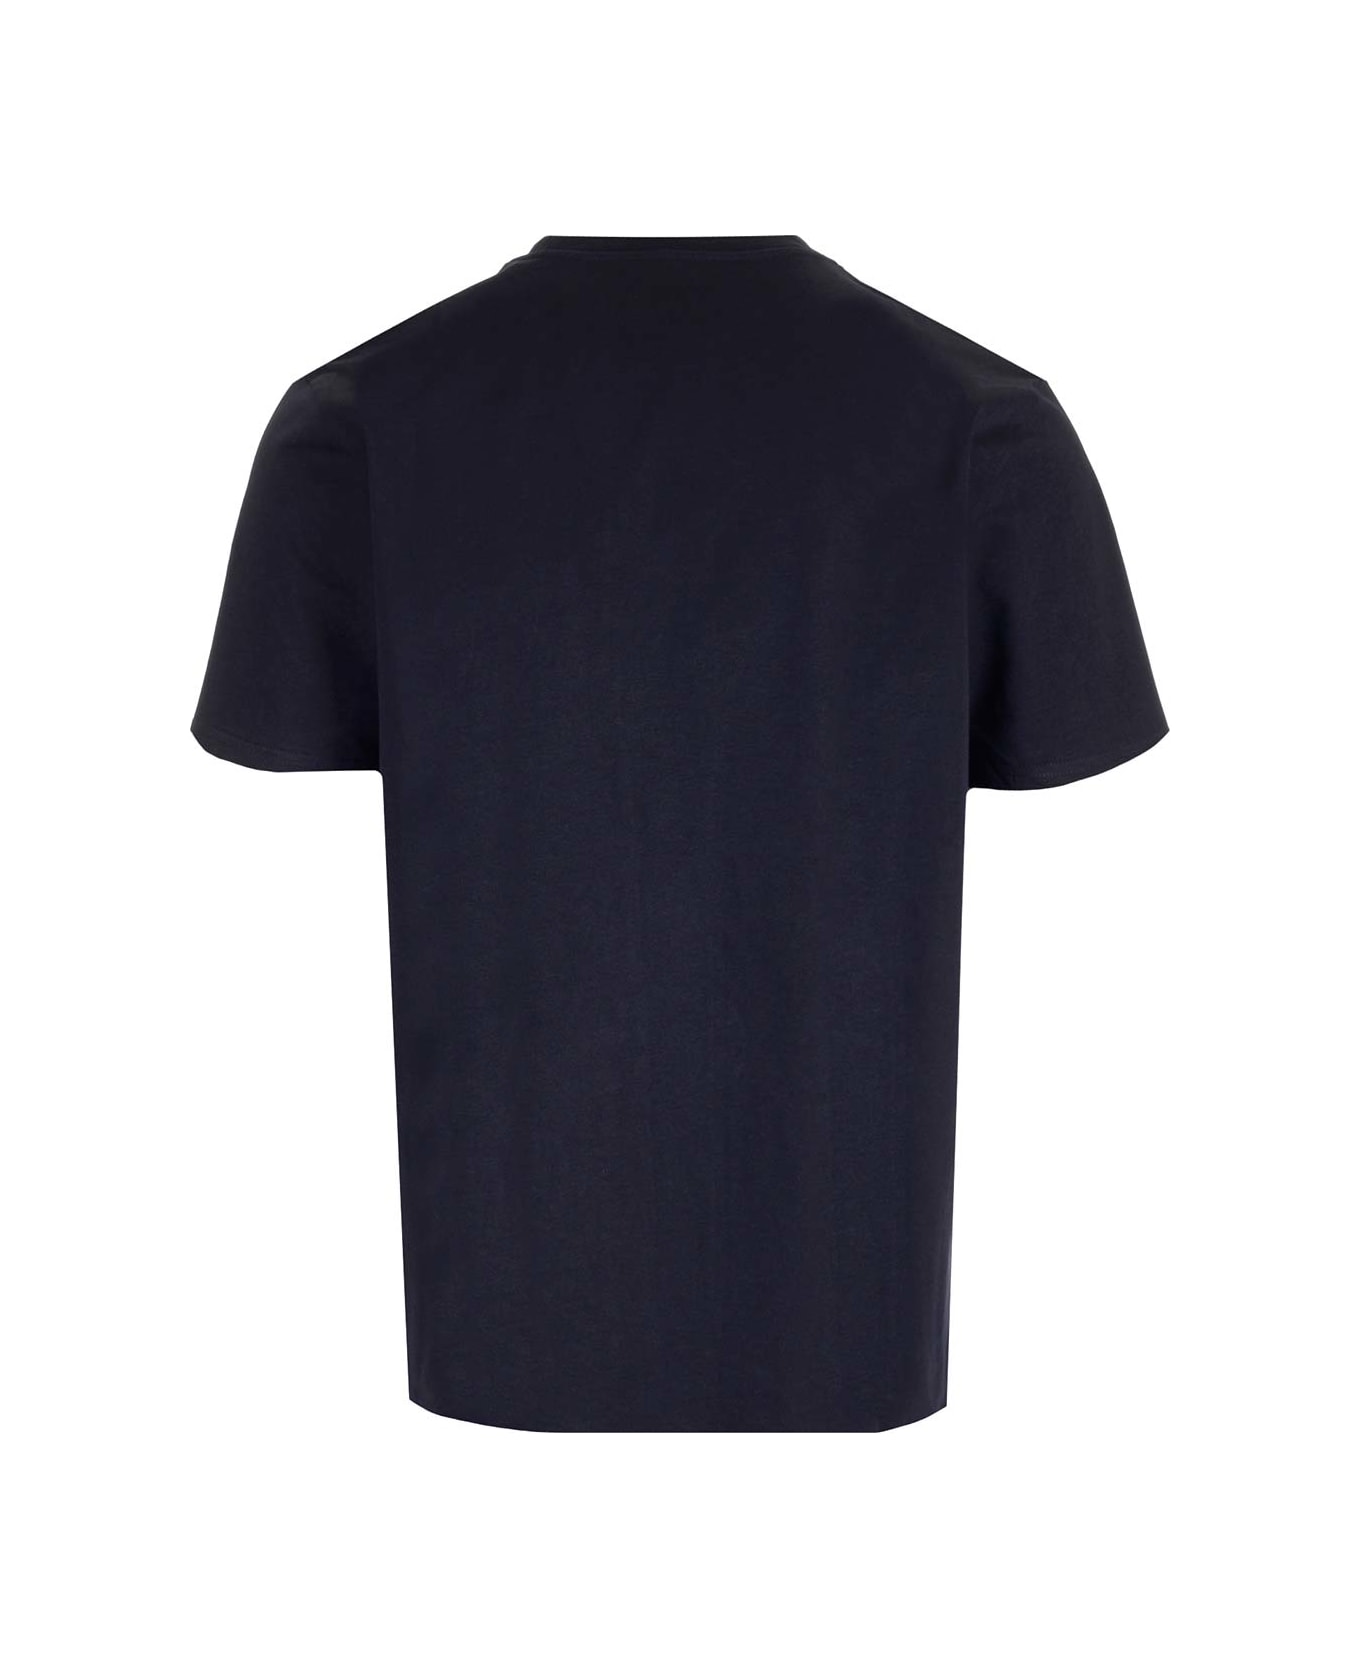 Carhartt Chest Pocket T-shirt - Dark navy